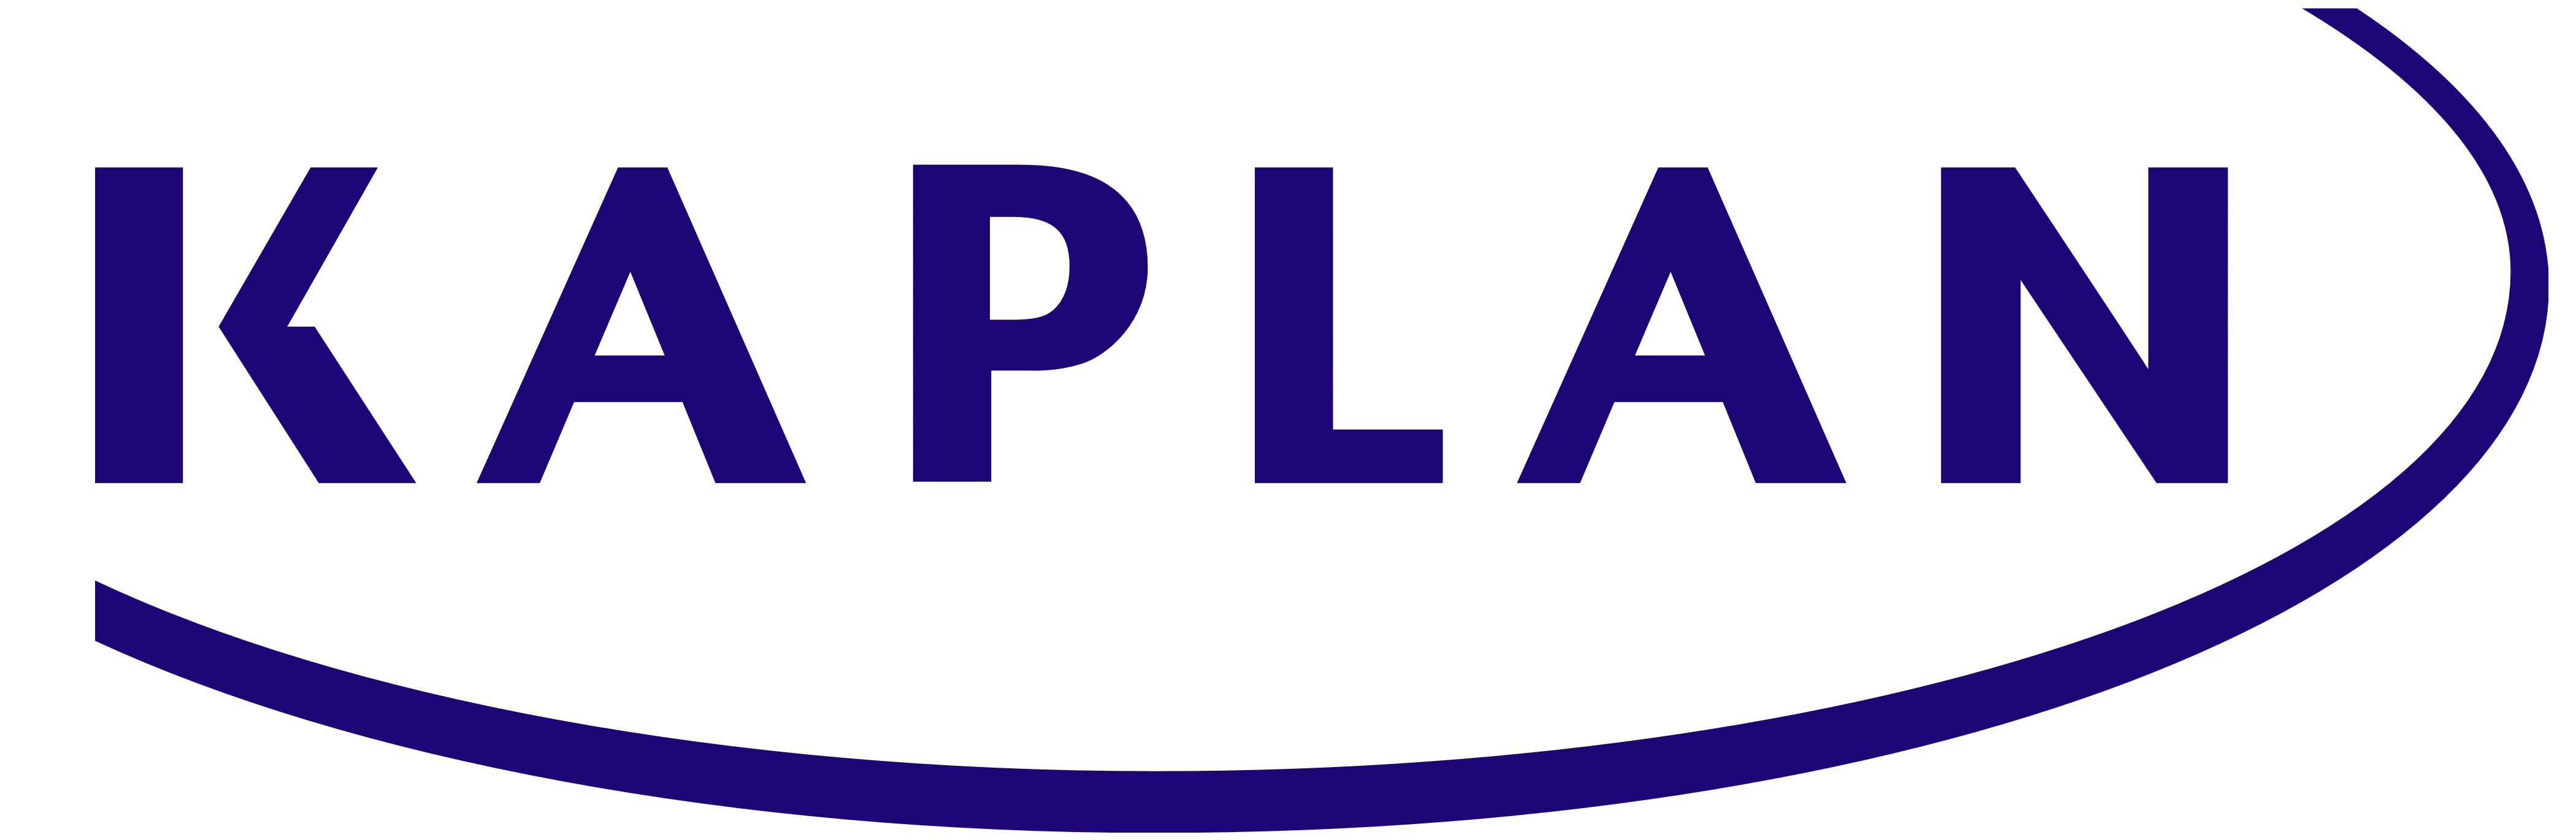 Kaplan_logo